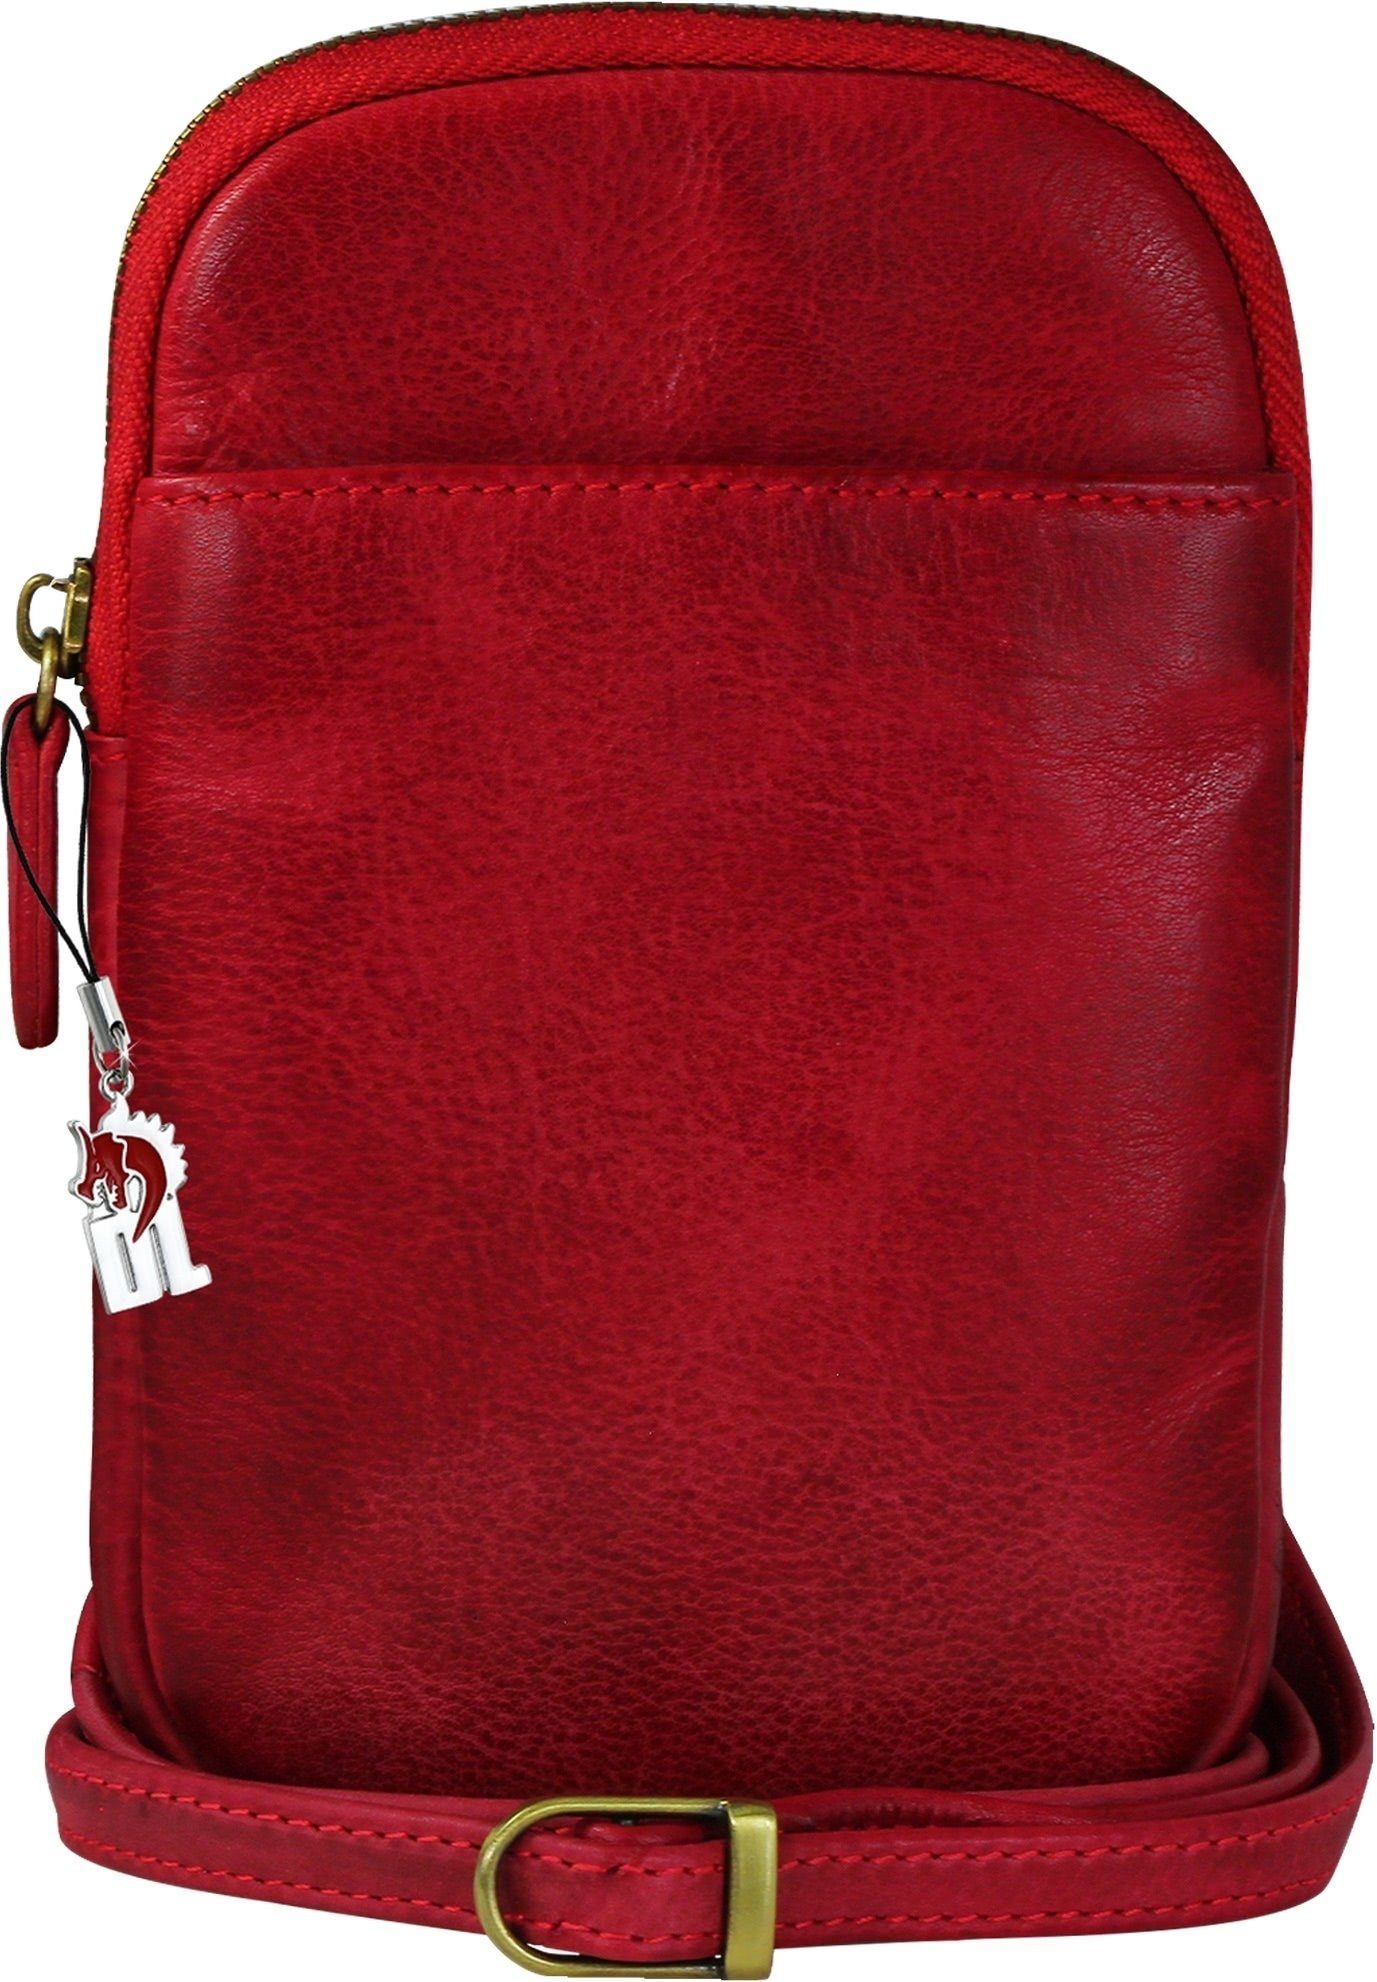 DrachenLeder Handtasche DrachenLeder Damen Handtasche Tasche rot (Handtasche), Damen, Herren Tasche aus Echtleder in rot, ca. 13cm Breite